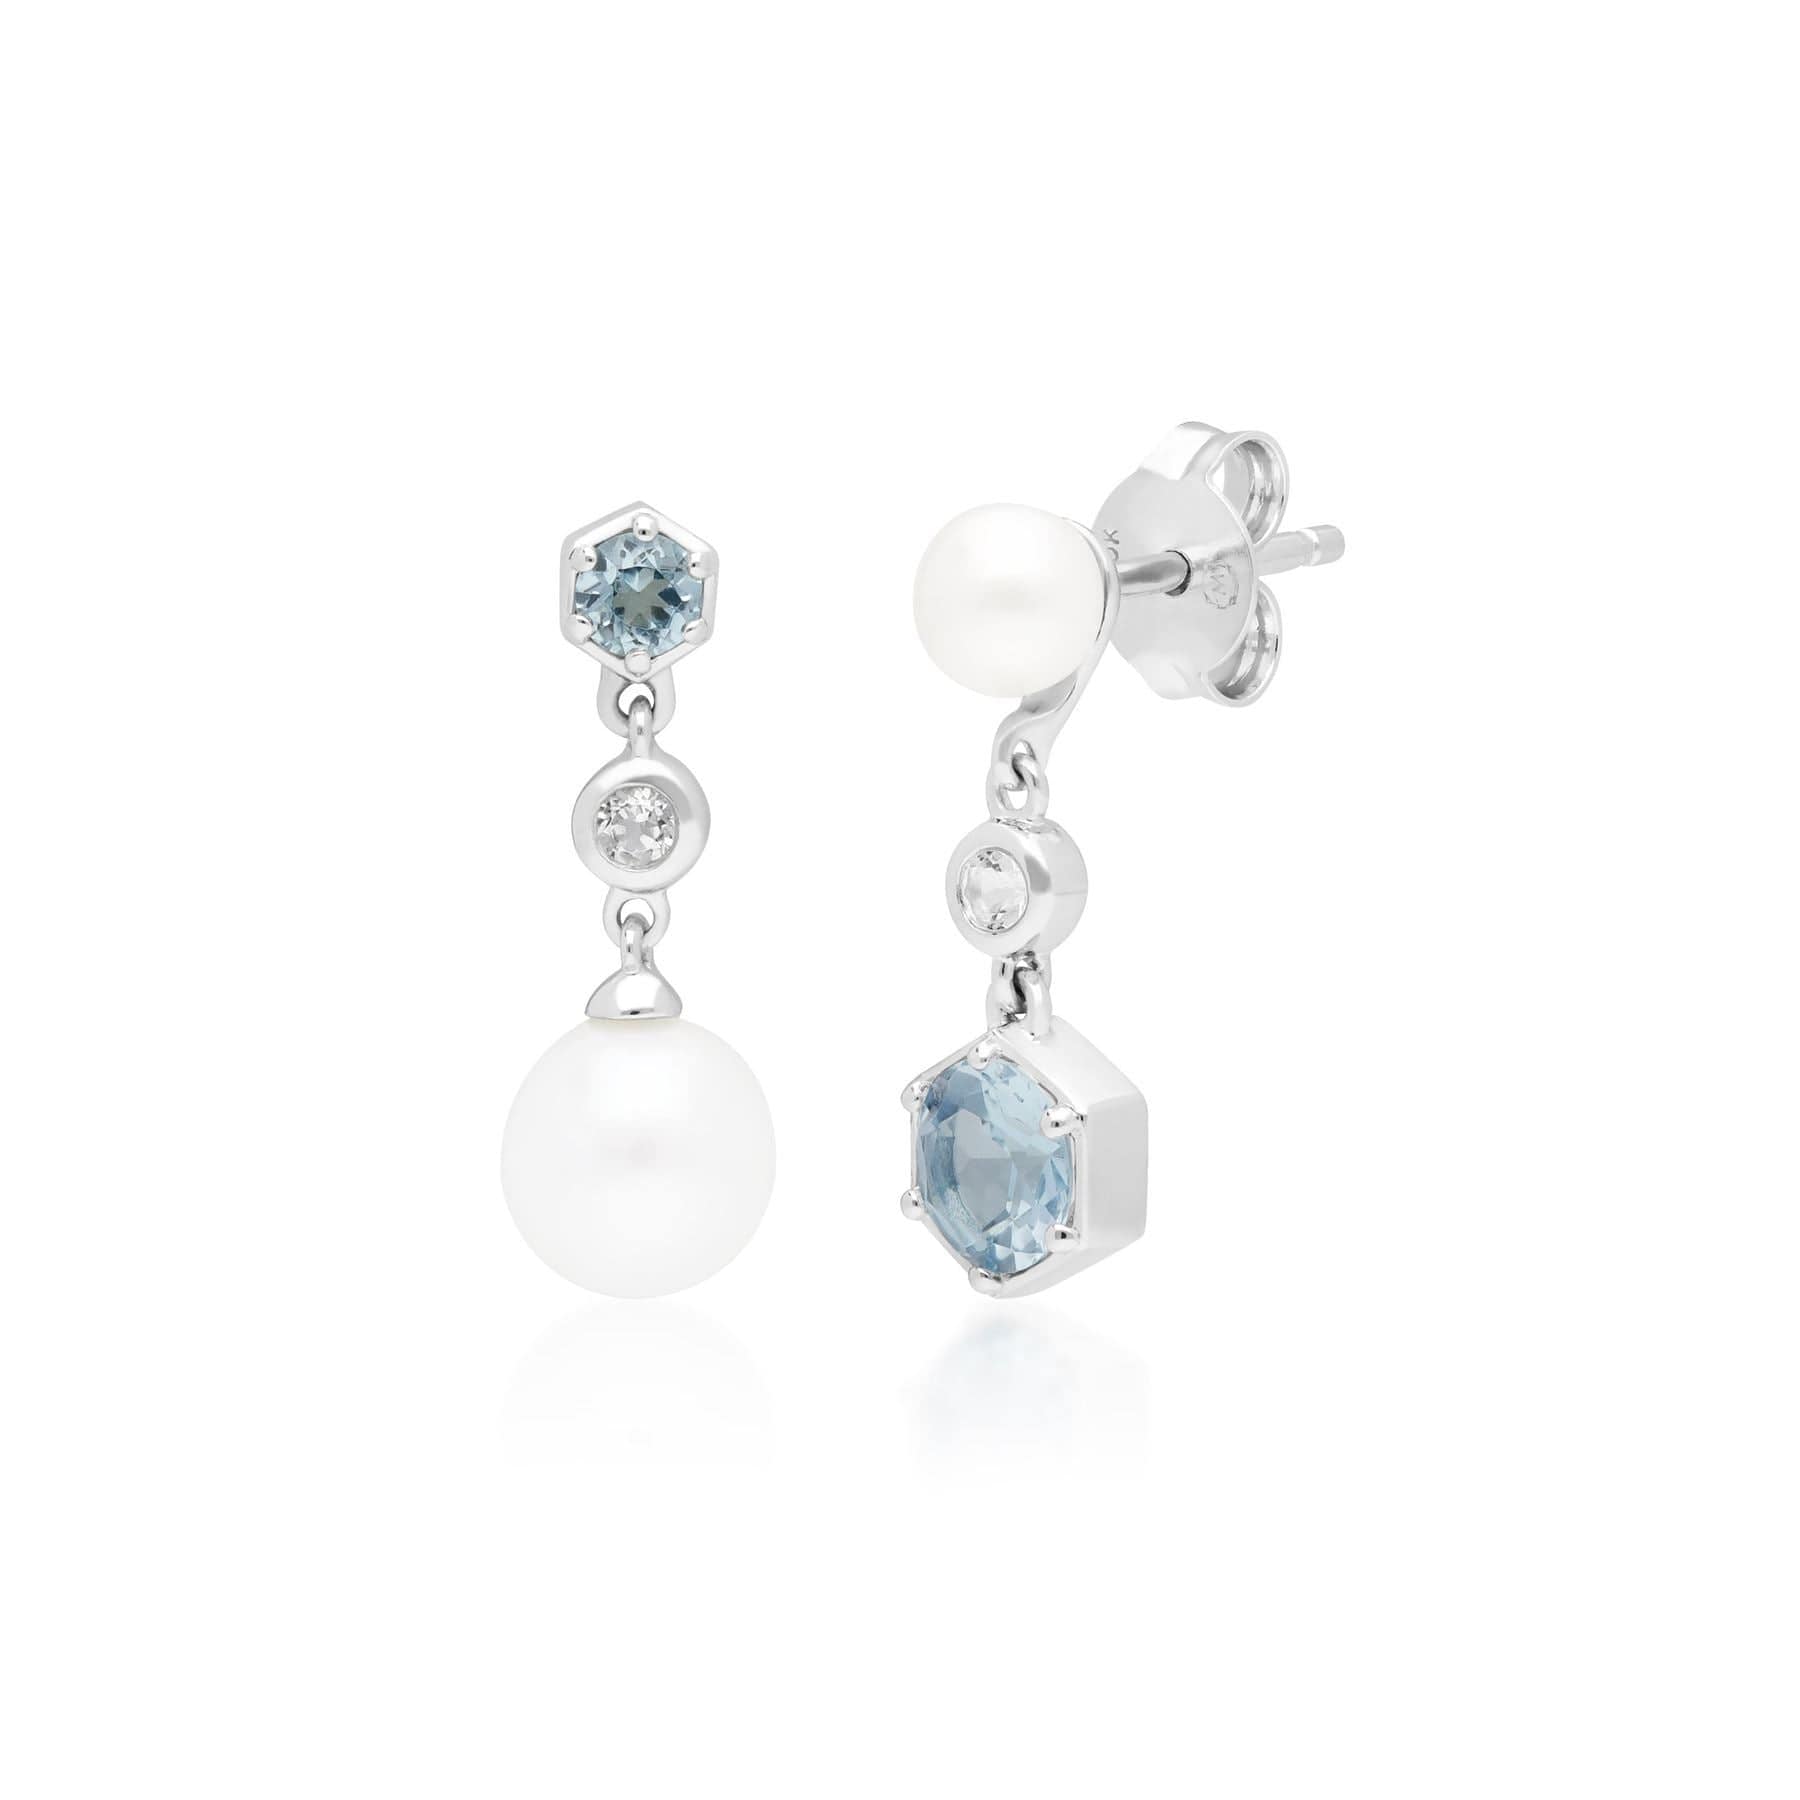 Modern Pearl & Topaz Ring & Drop Earring Set in Silver - Gemondo